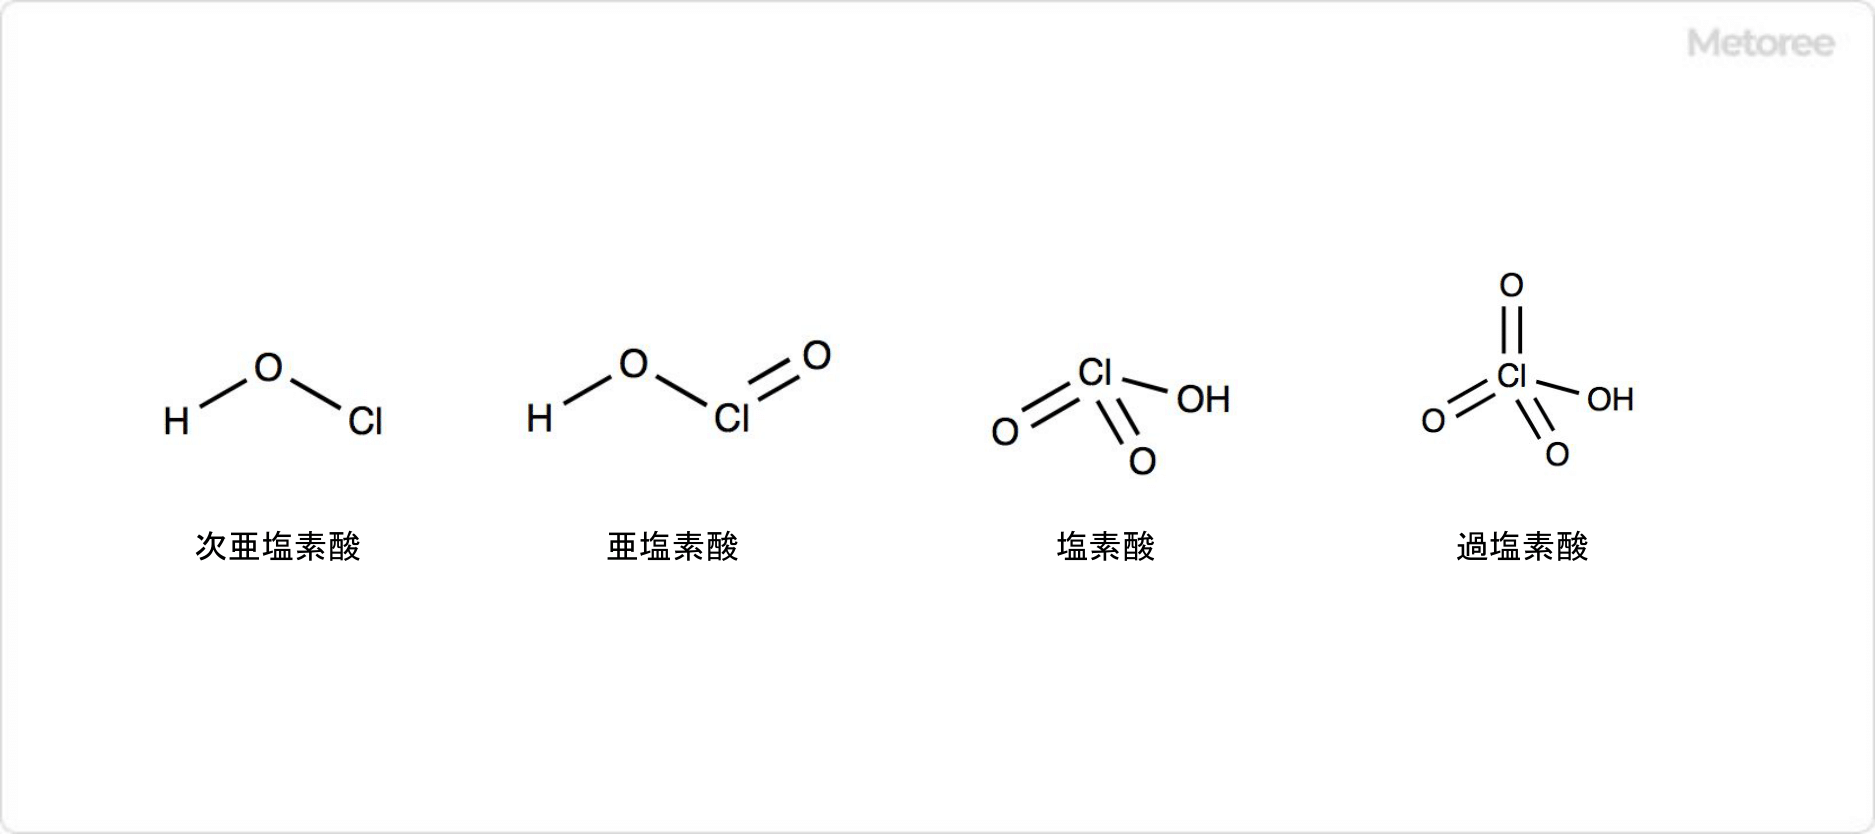 塩素酸ナトリウムの関連化合物の構造